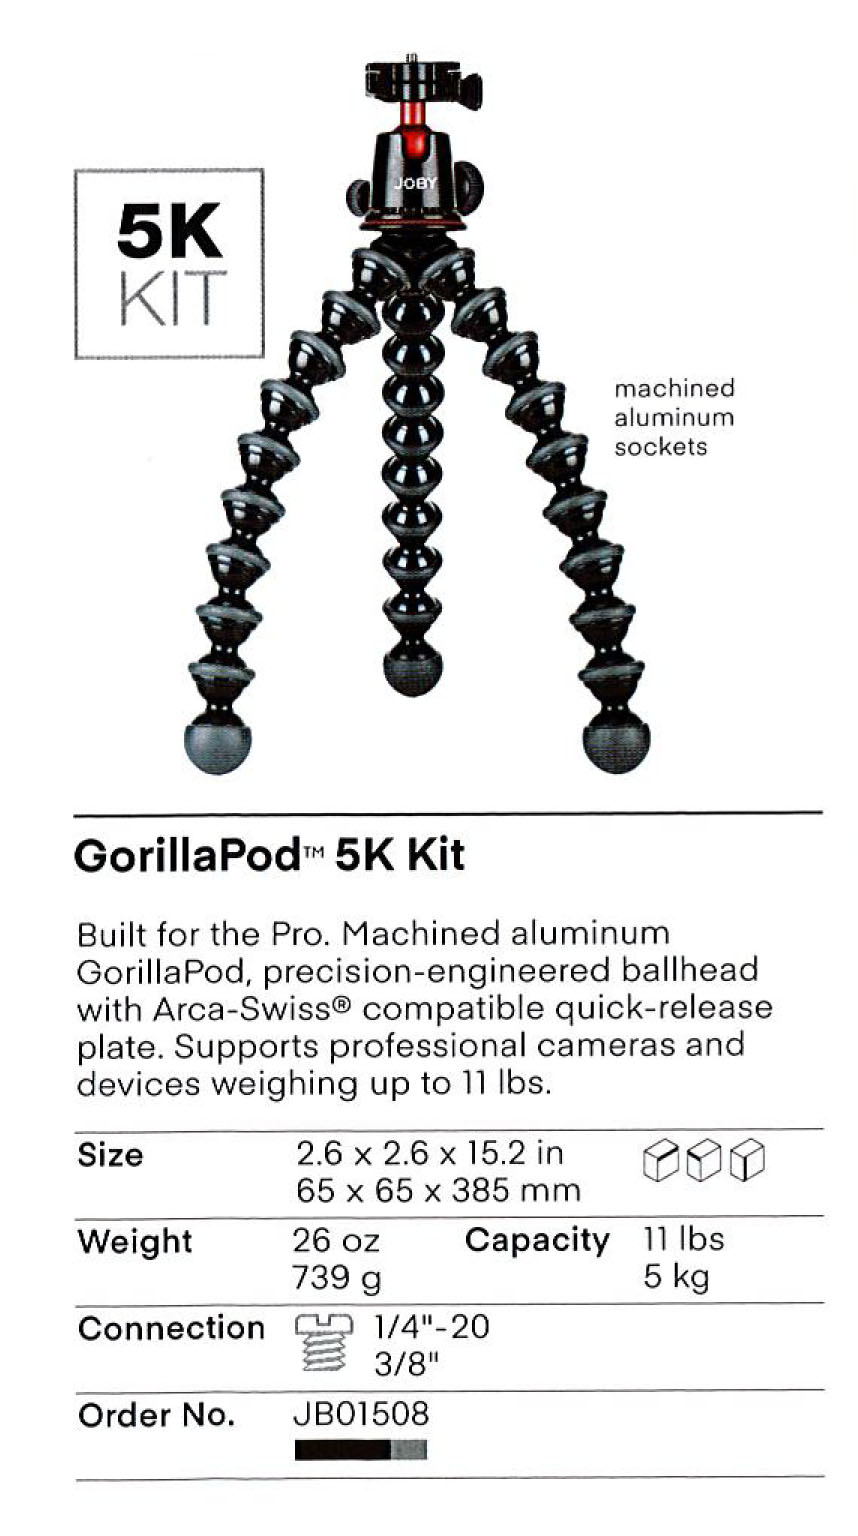 GorillaPod 5K Kit